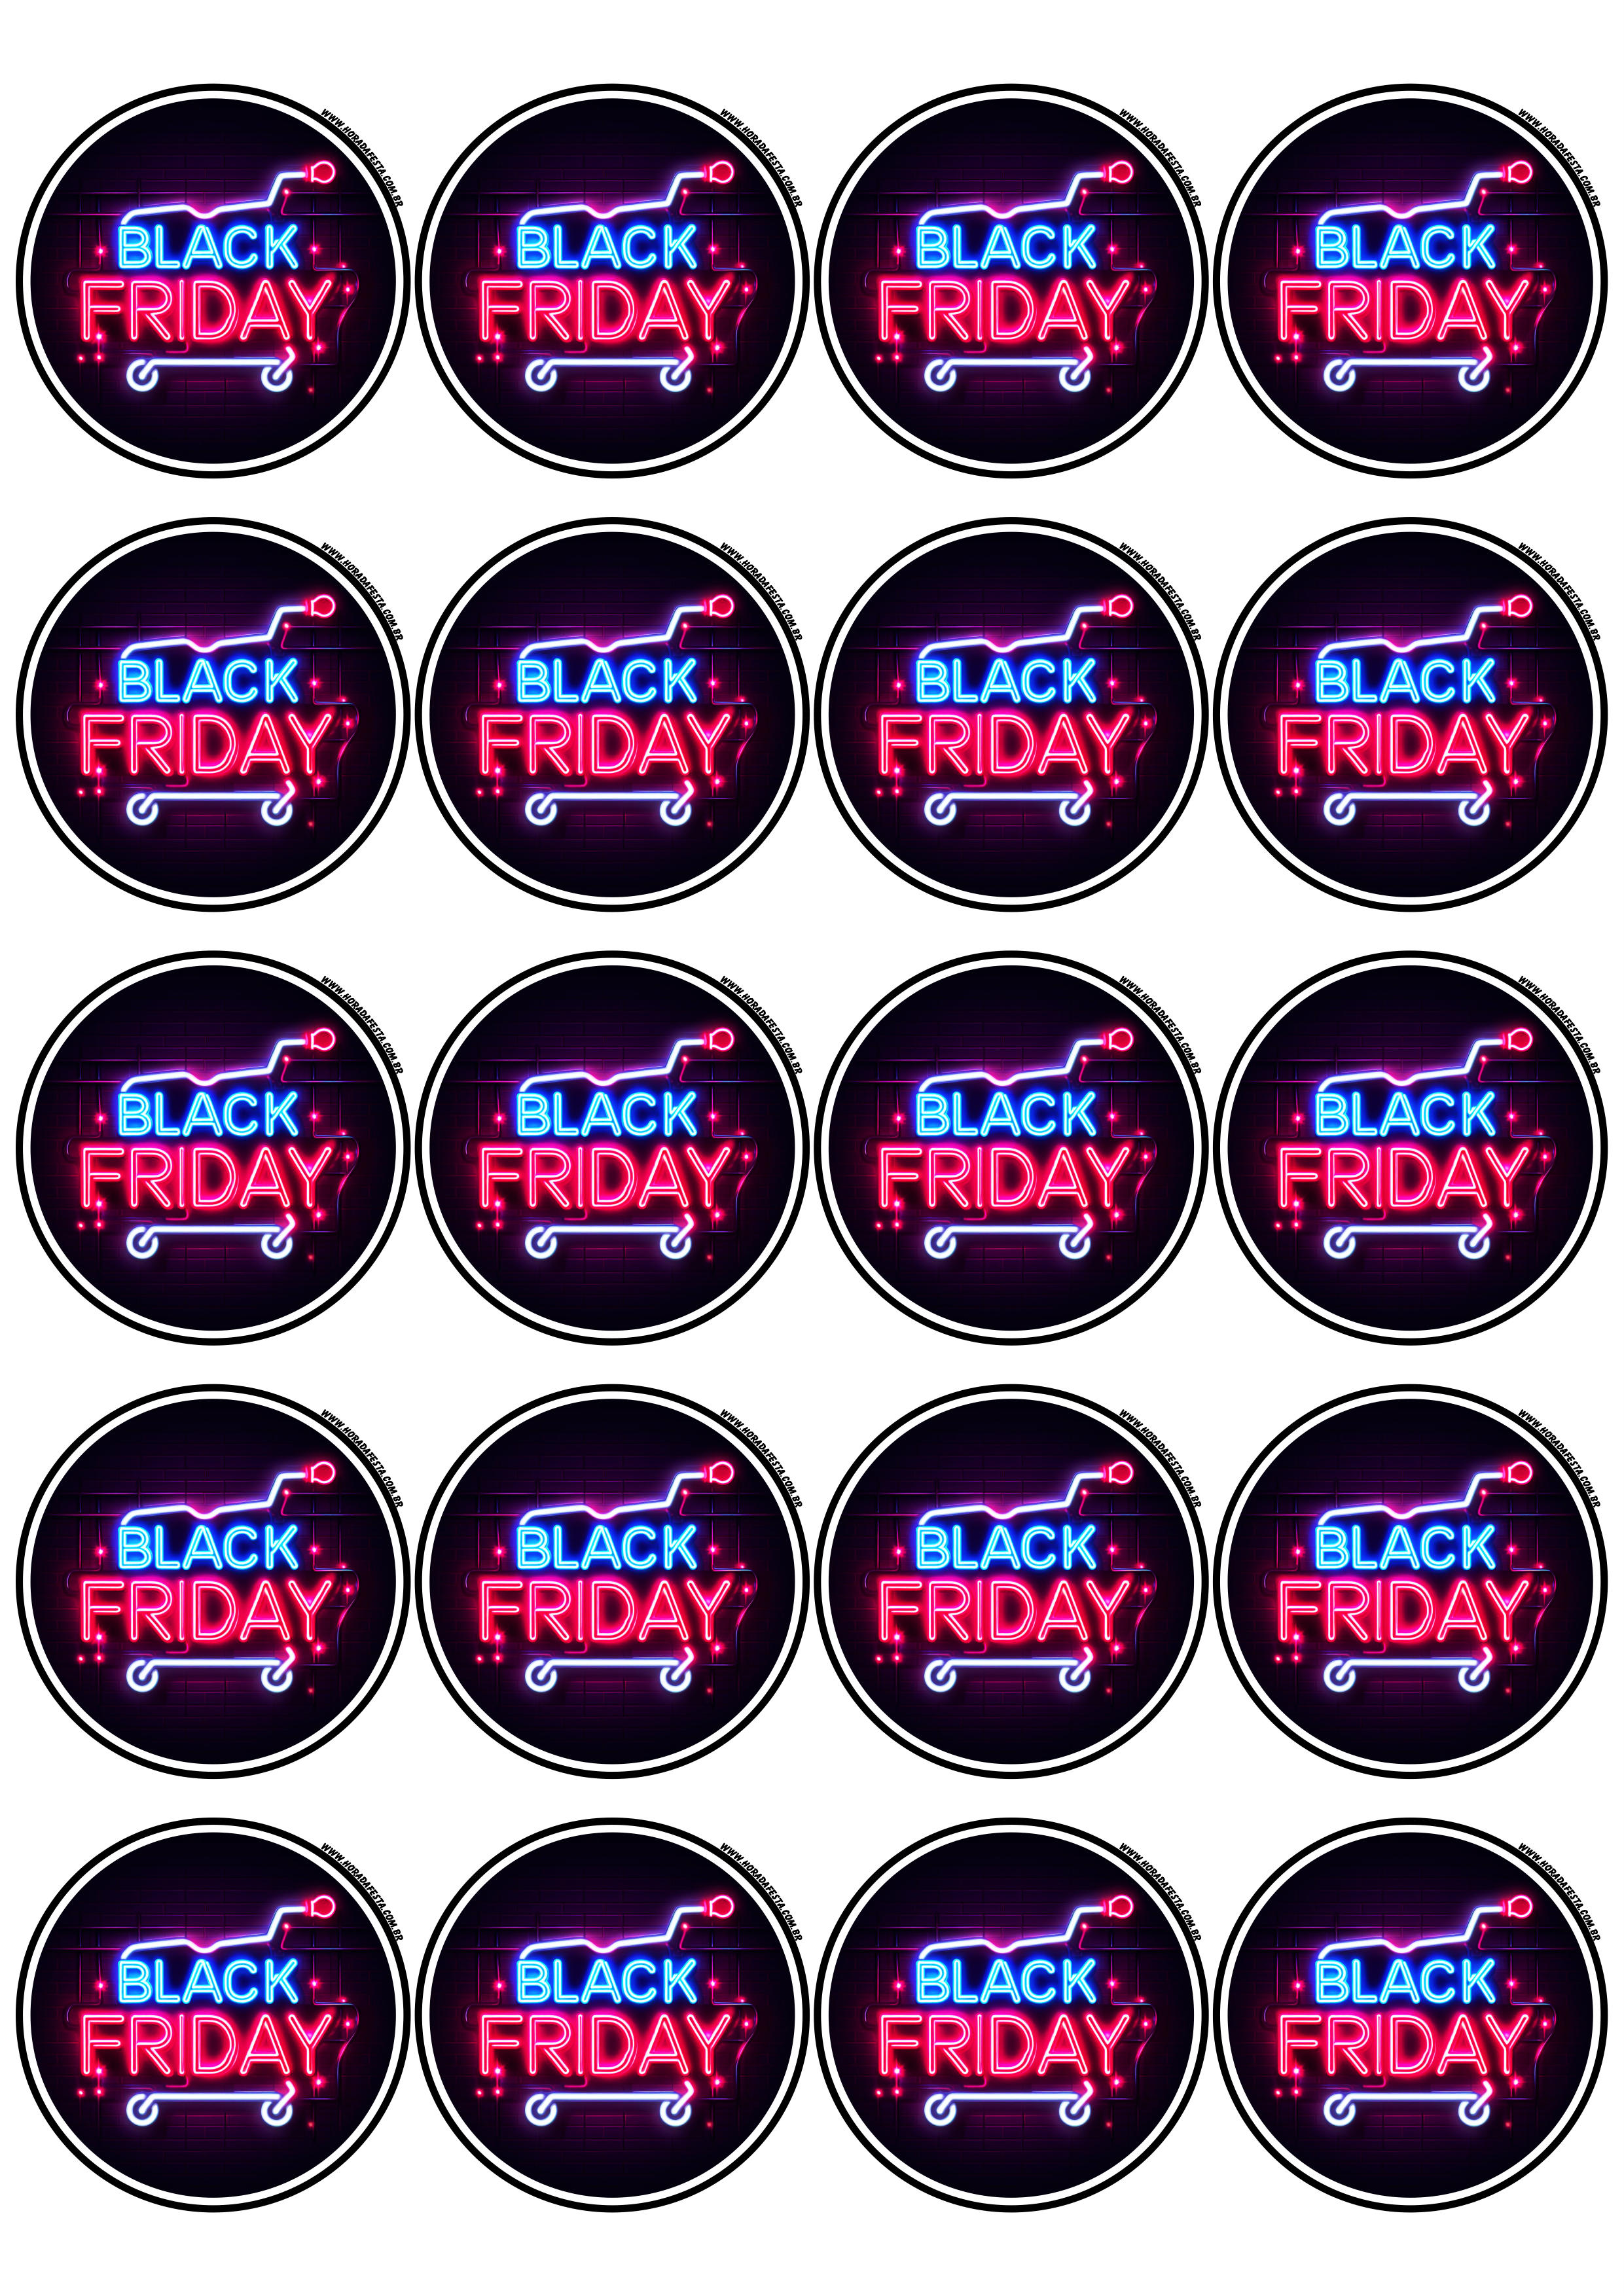 Black Friday adesivo redondo tag sticker painel artes gráficas lojas online promoções 20 imagens png